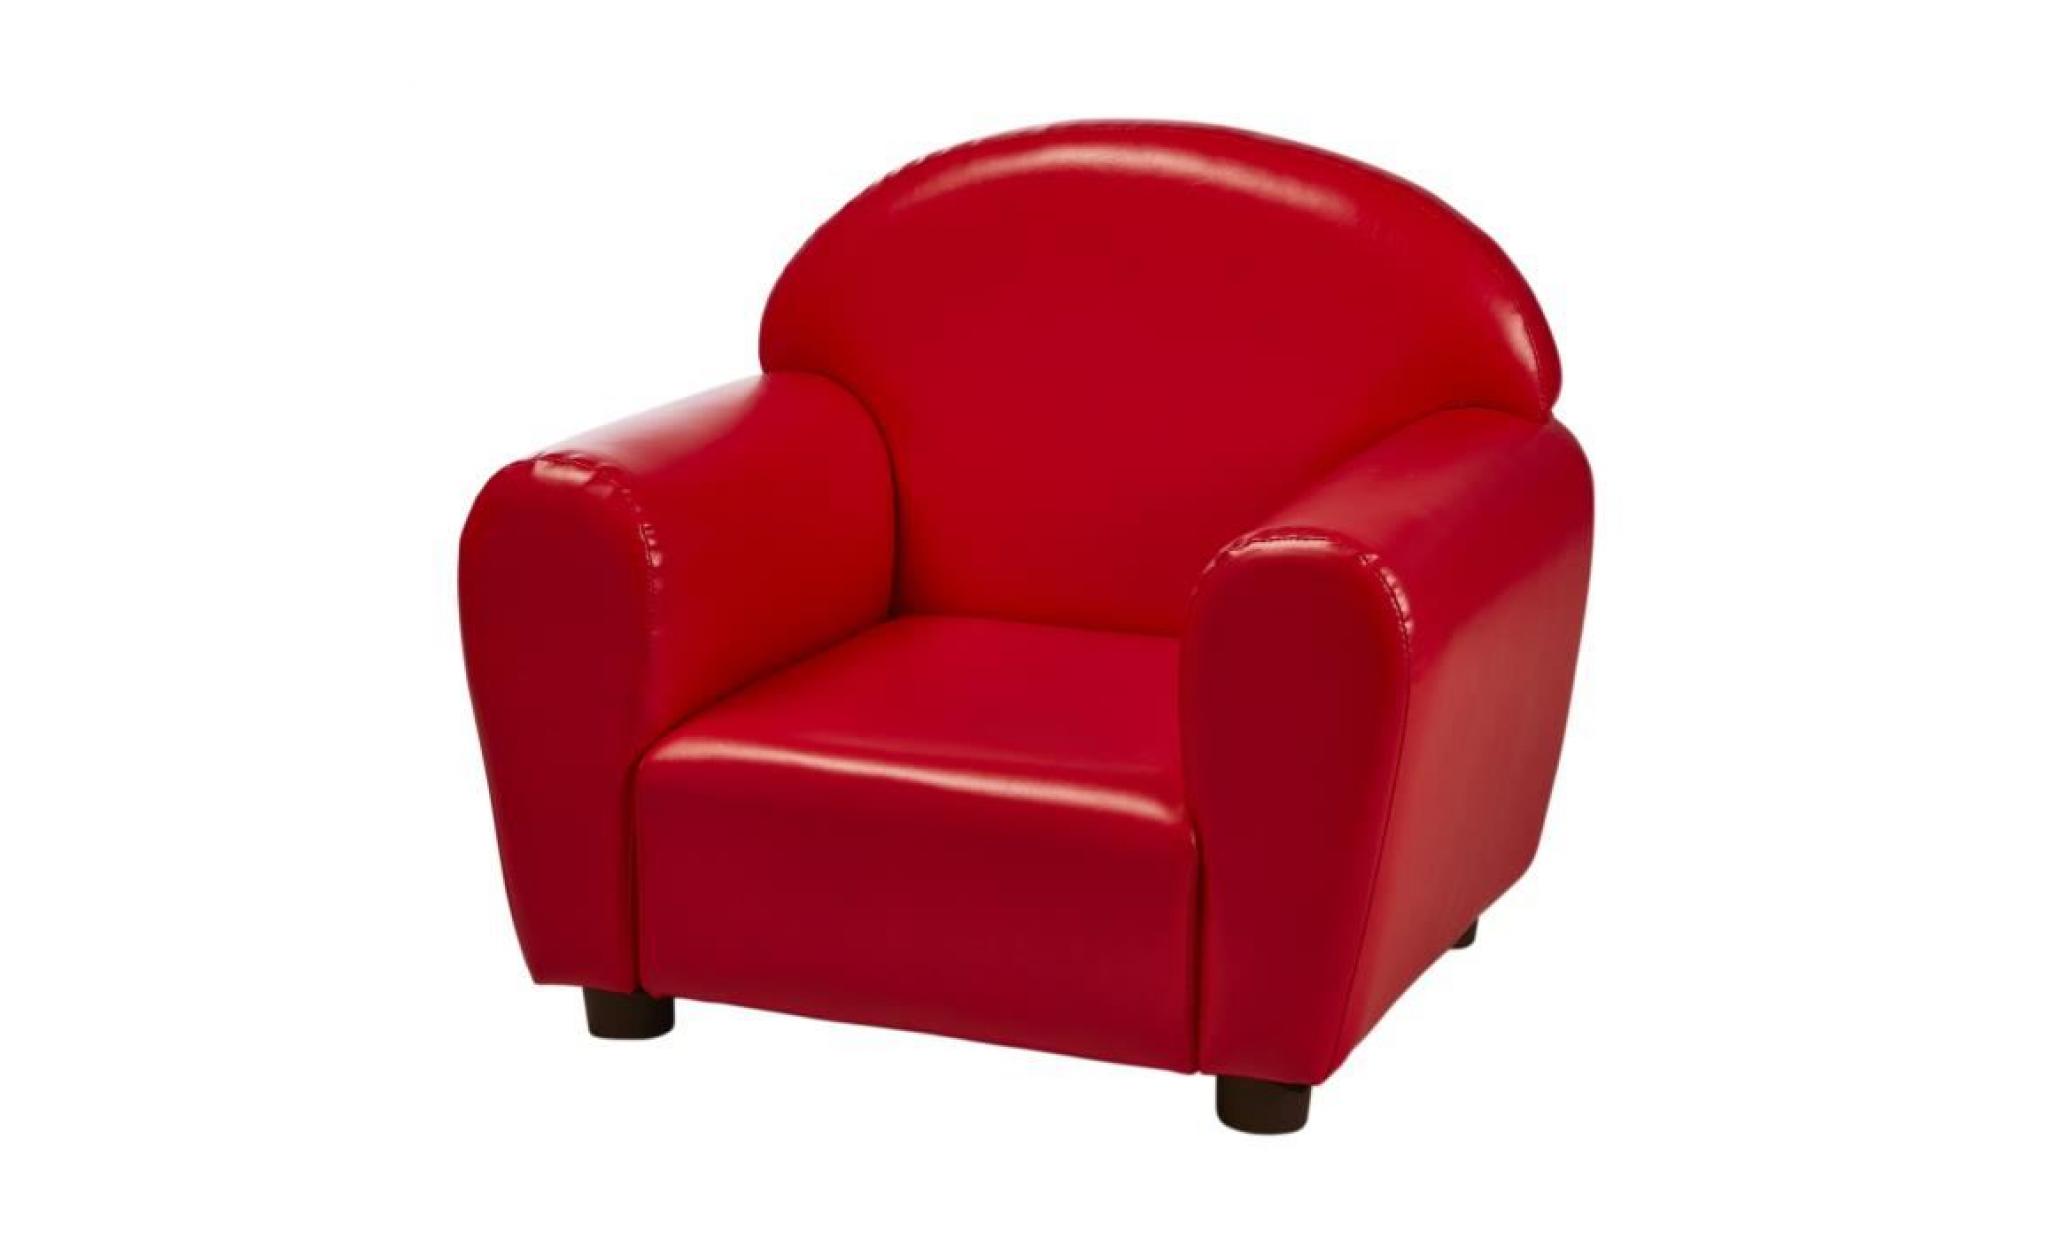 fauteuil club enfant   simili rouge   contemporain   l 50 x p 40 cm